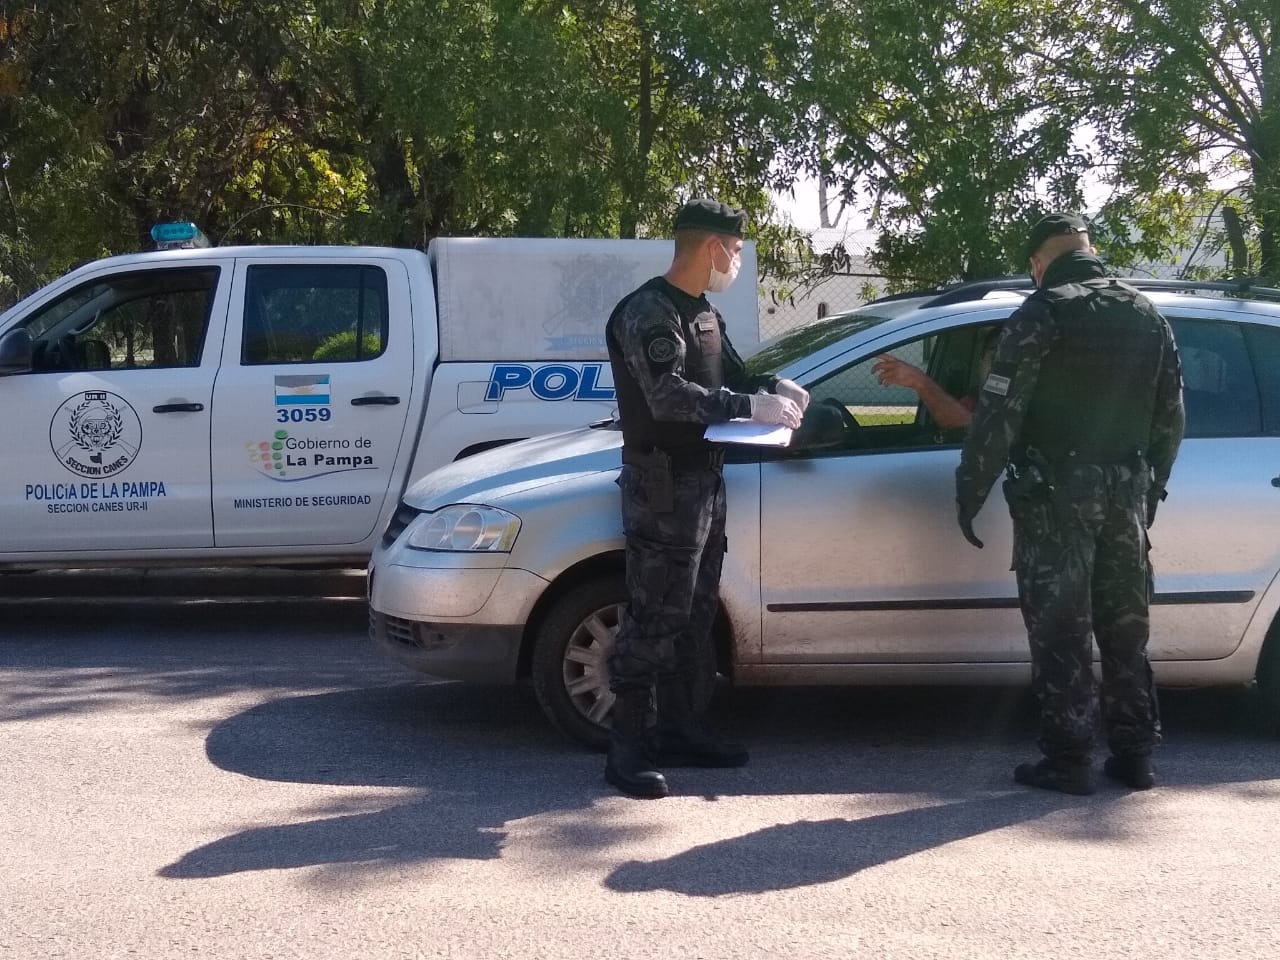 Policía de La Pampa notificó a viajantes de Río Cuarto que luego de trabajar pretendían hospedarse en Santa Rosa